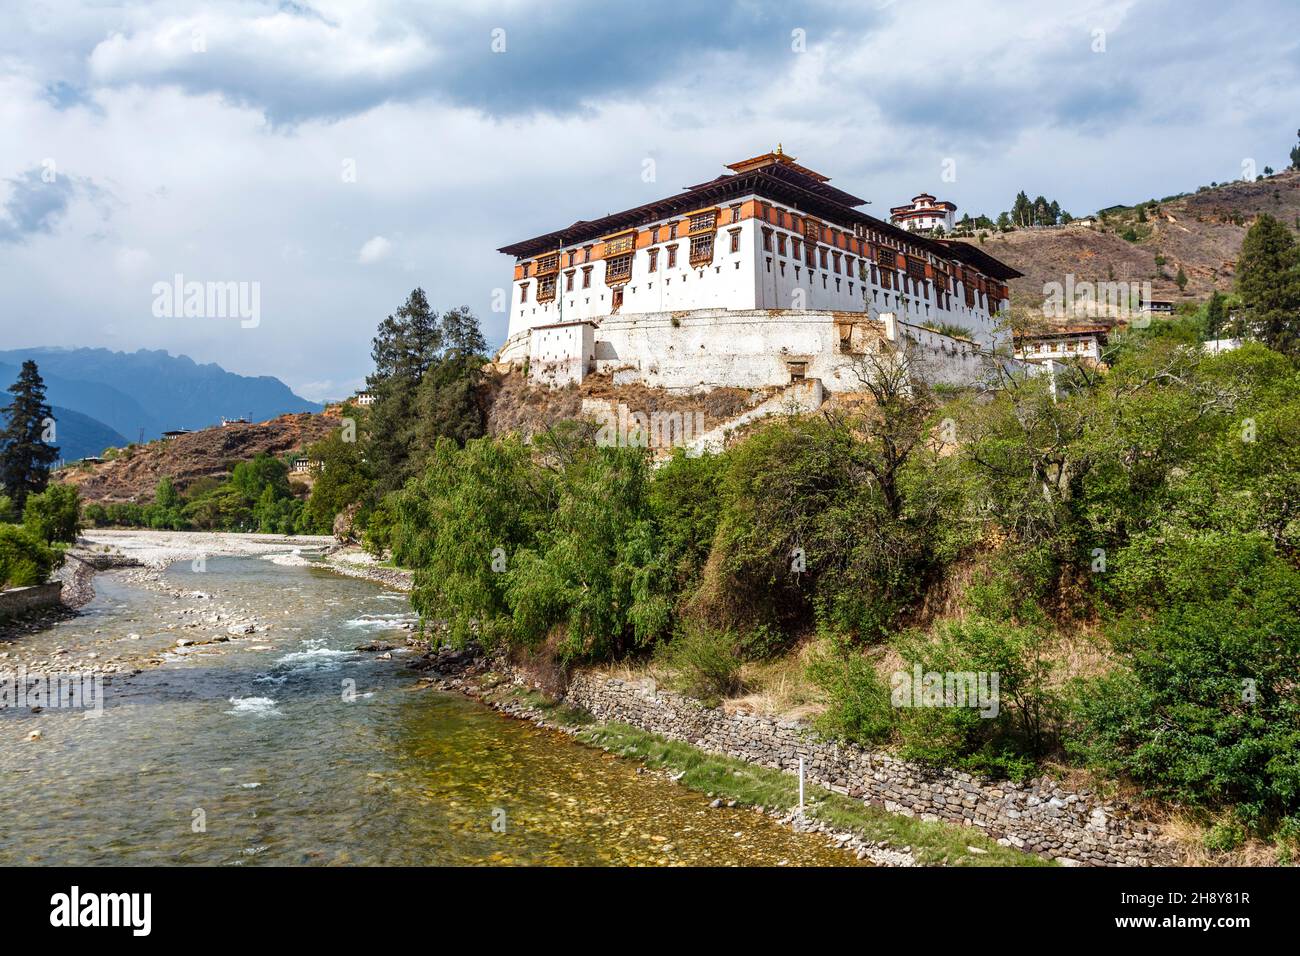 Außenansicht des Klosters Rinpun Dzong in Paro, Bhutan, Asien Stockfoto